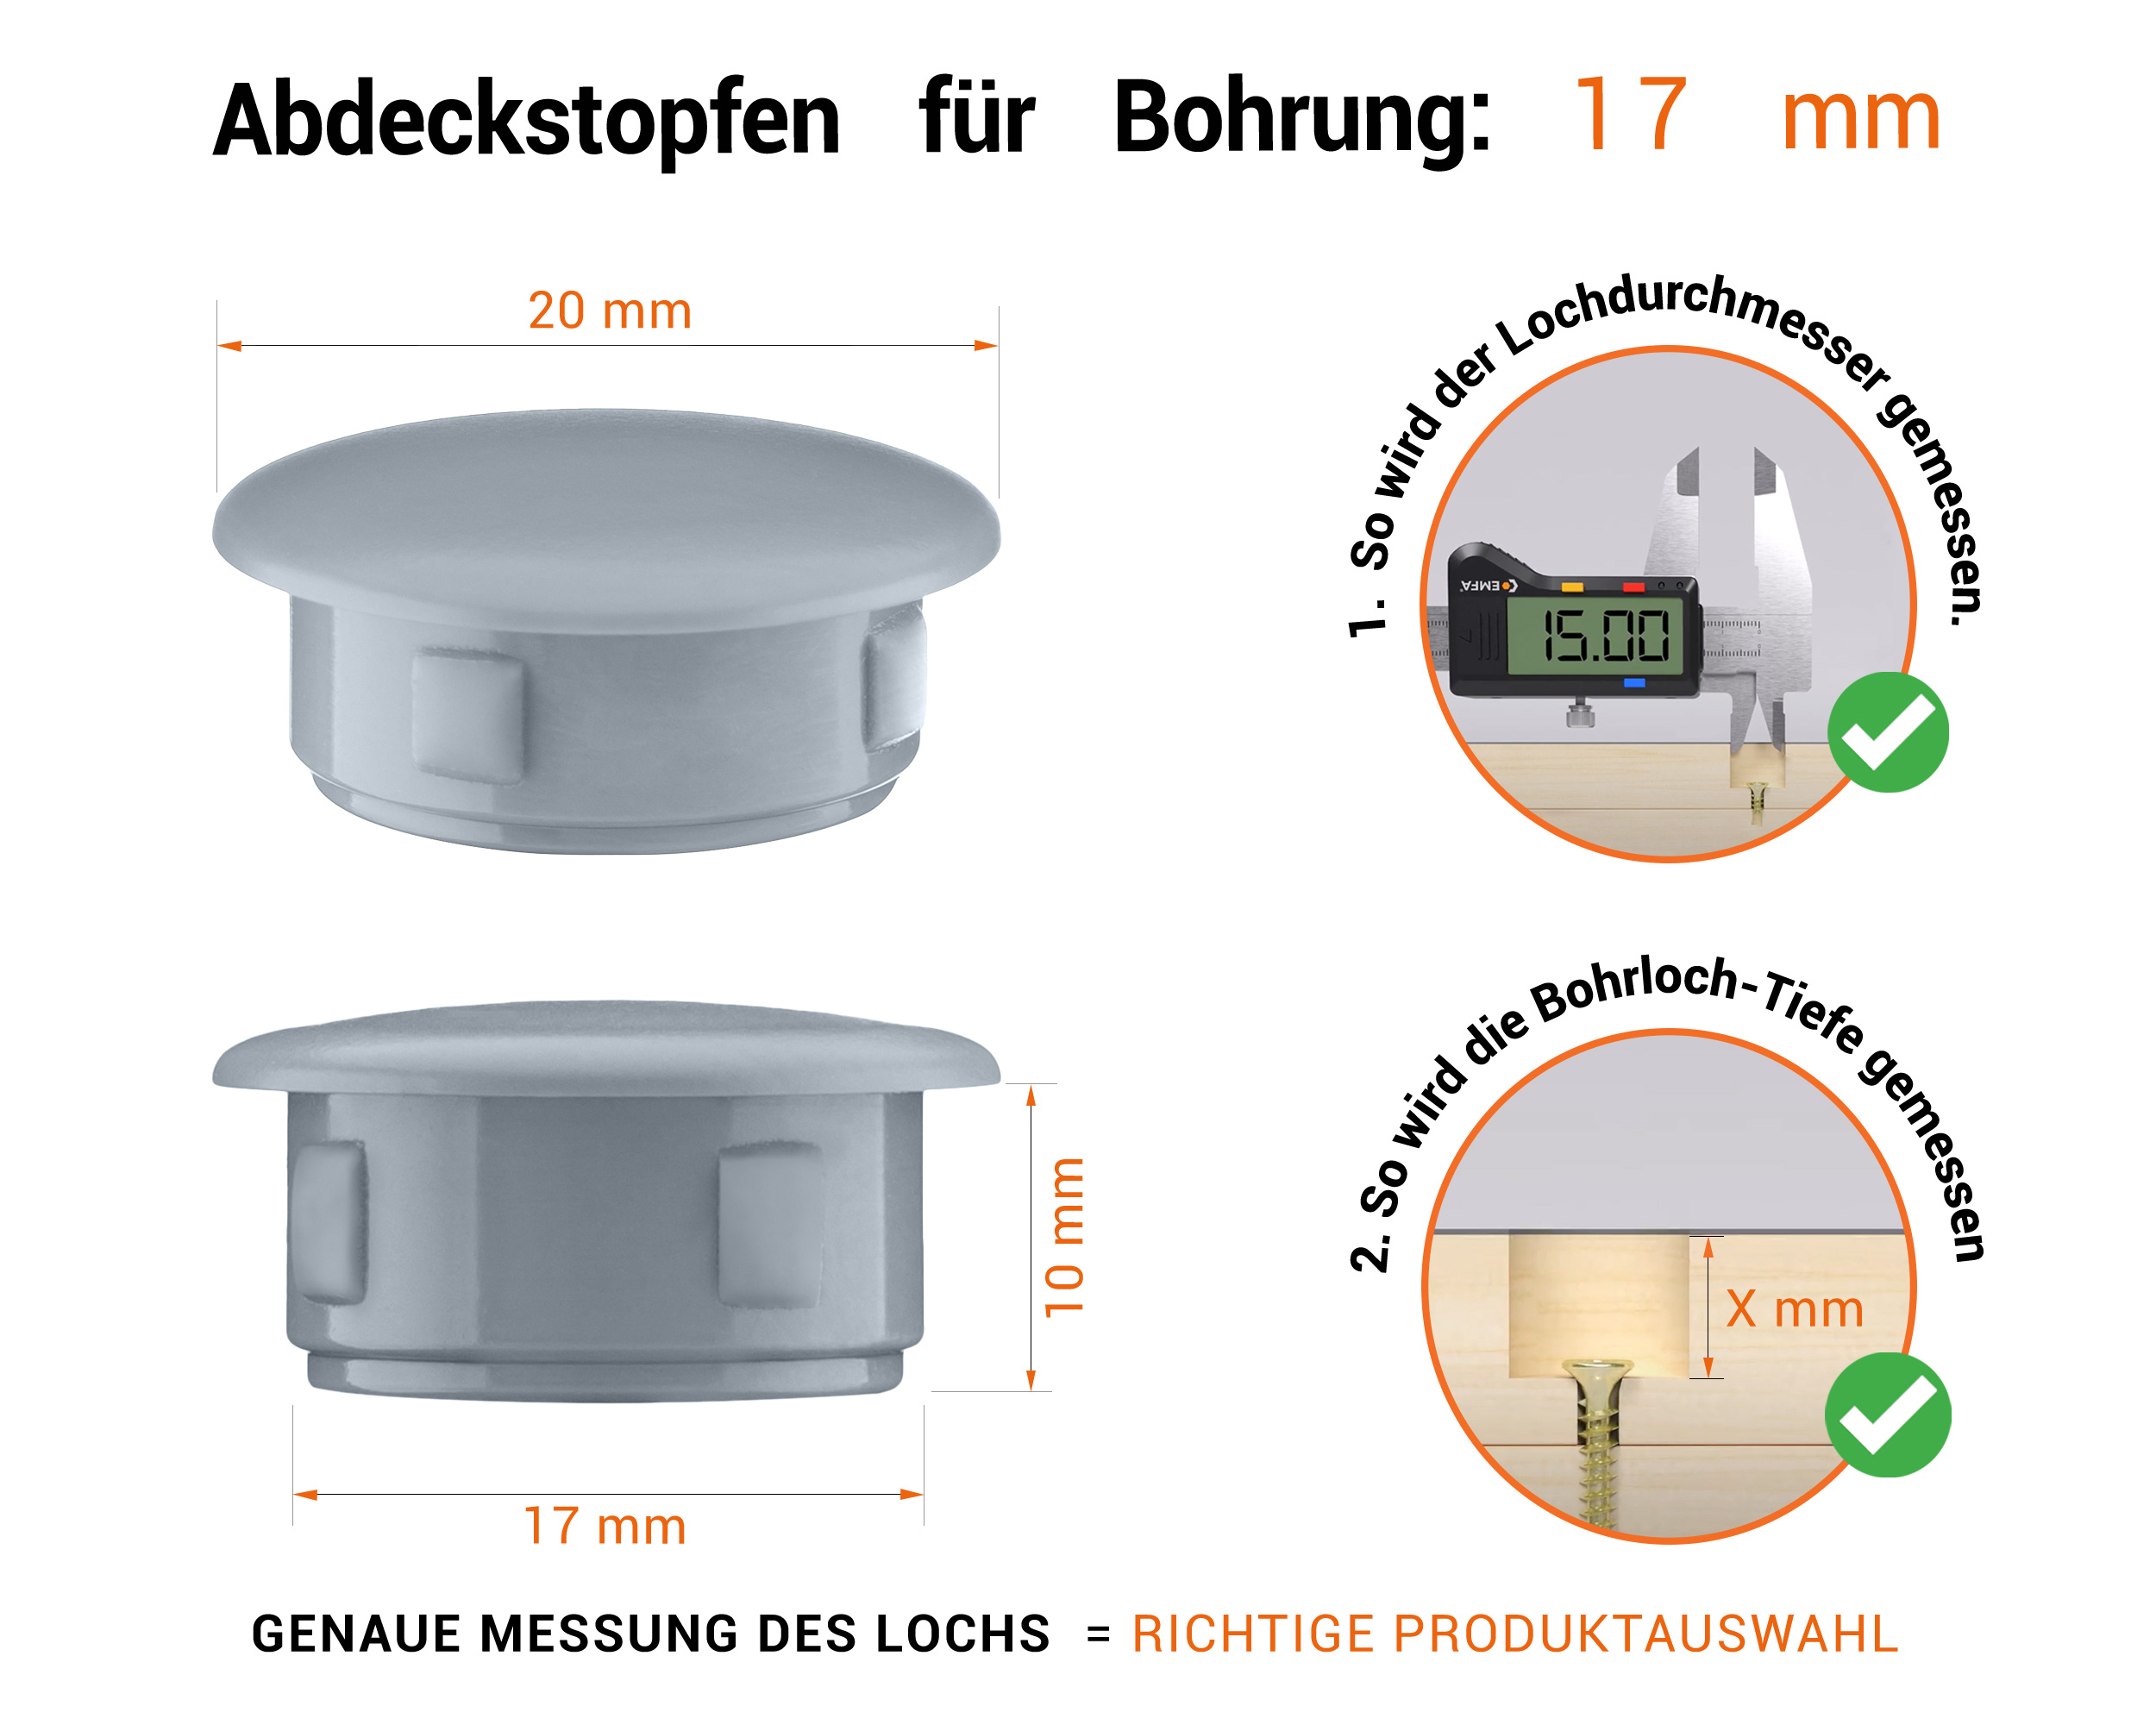 Graue Blindstopfen aus Kunststoff für Bohrung 17 mmmm mit technischen Abmessungen und Anleitung für korrekte Messung